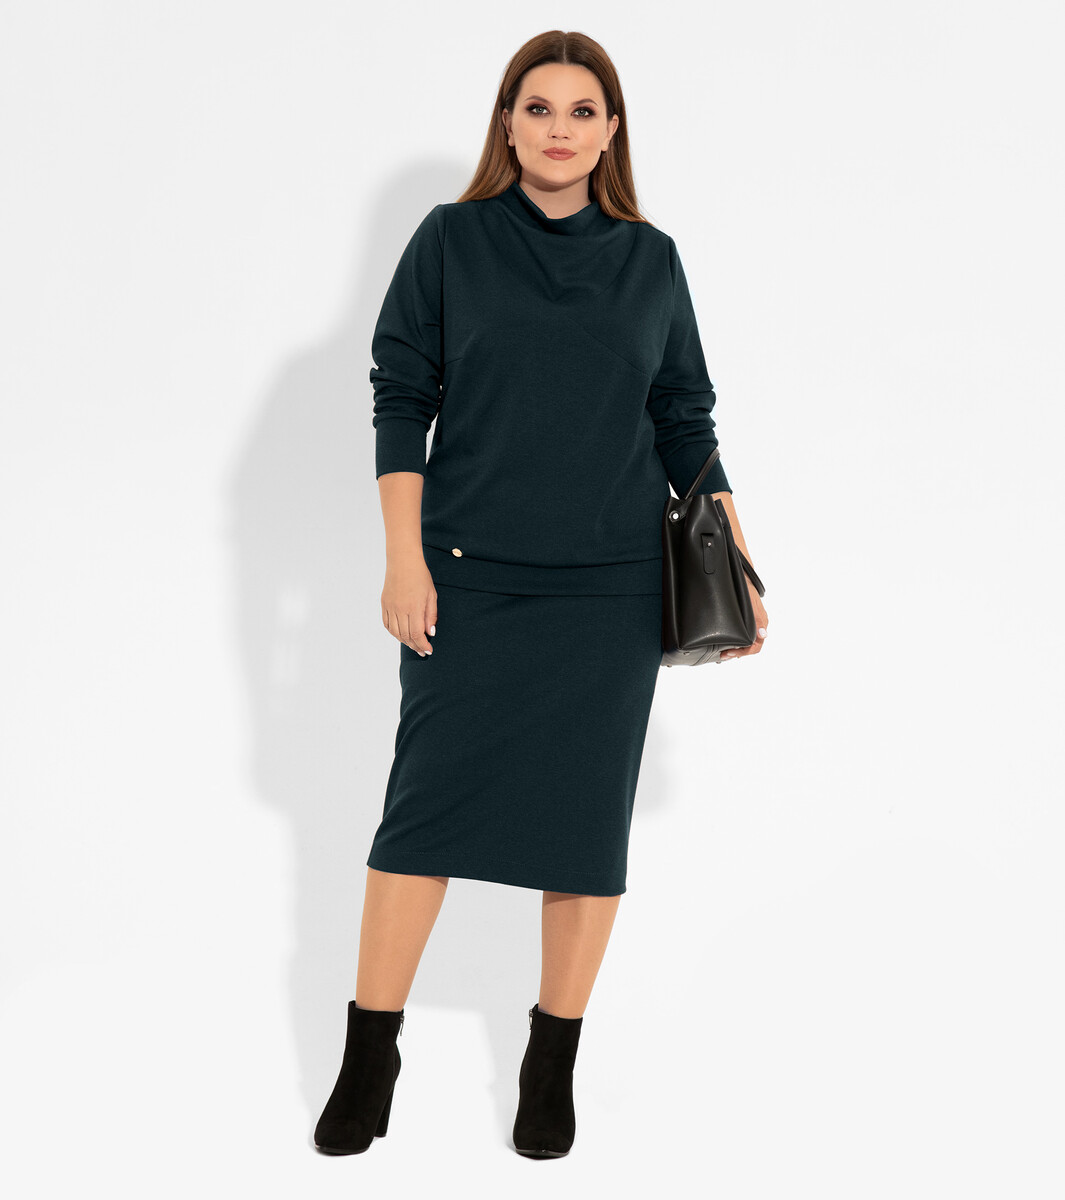 Комплект женский (джемпер, юбка) PANDA, размер 56, цвет темно-зеленый 01121928 - фото 1